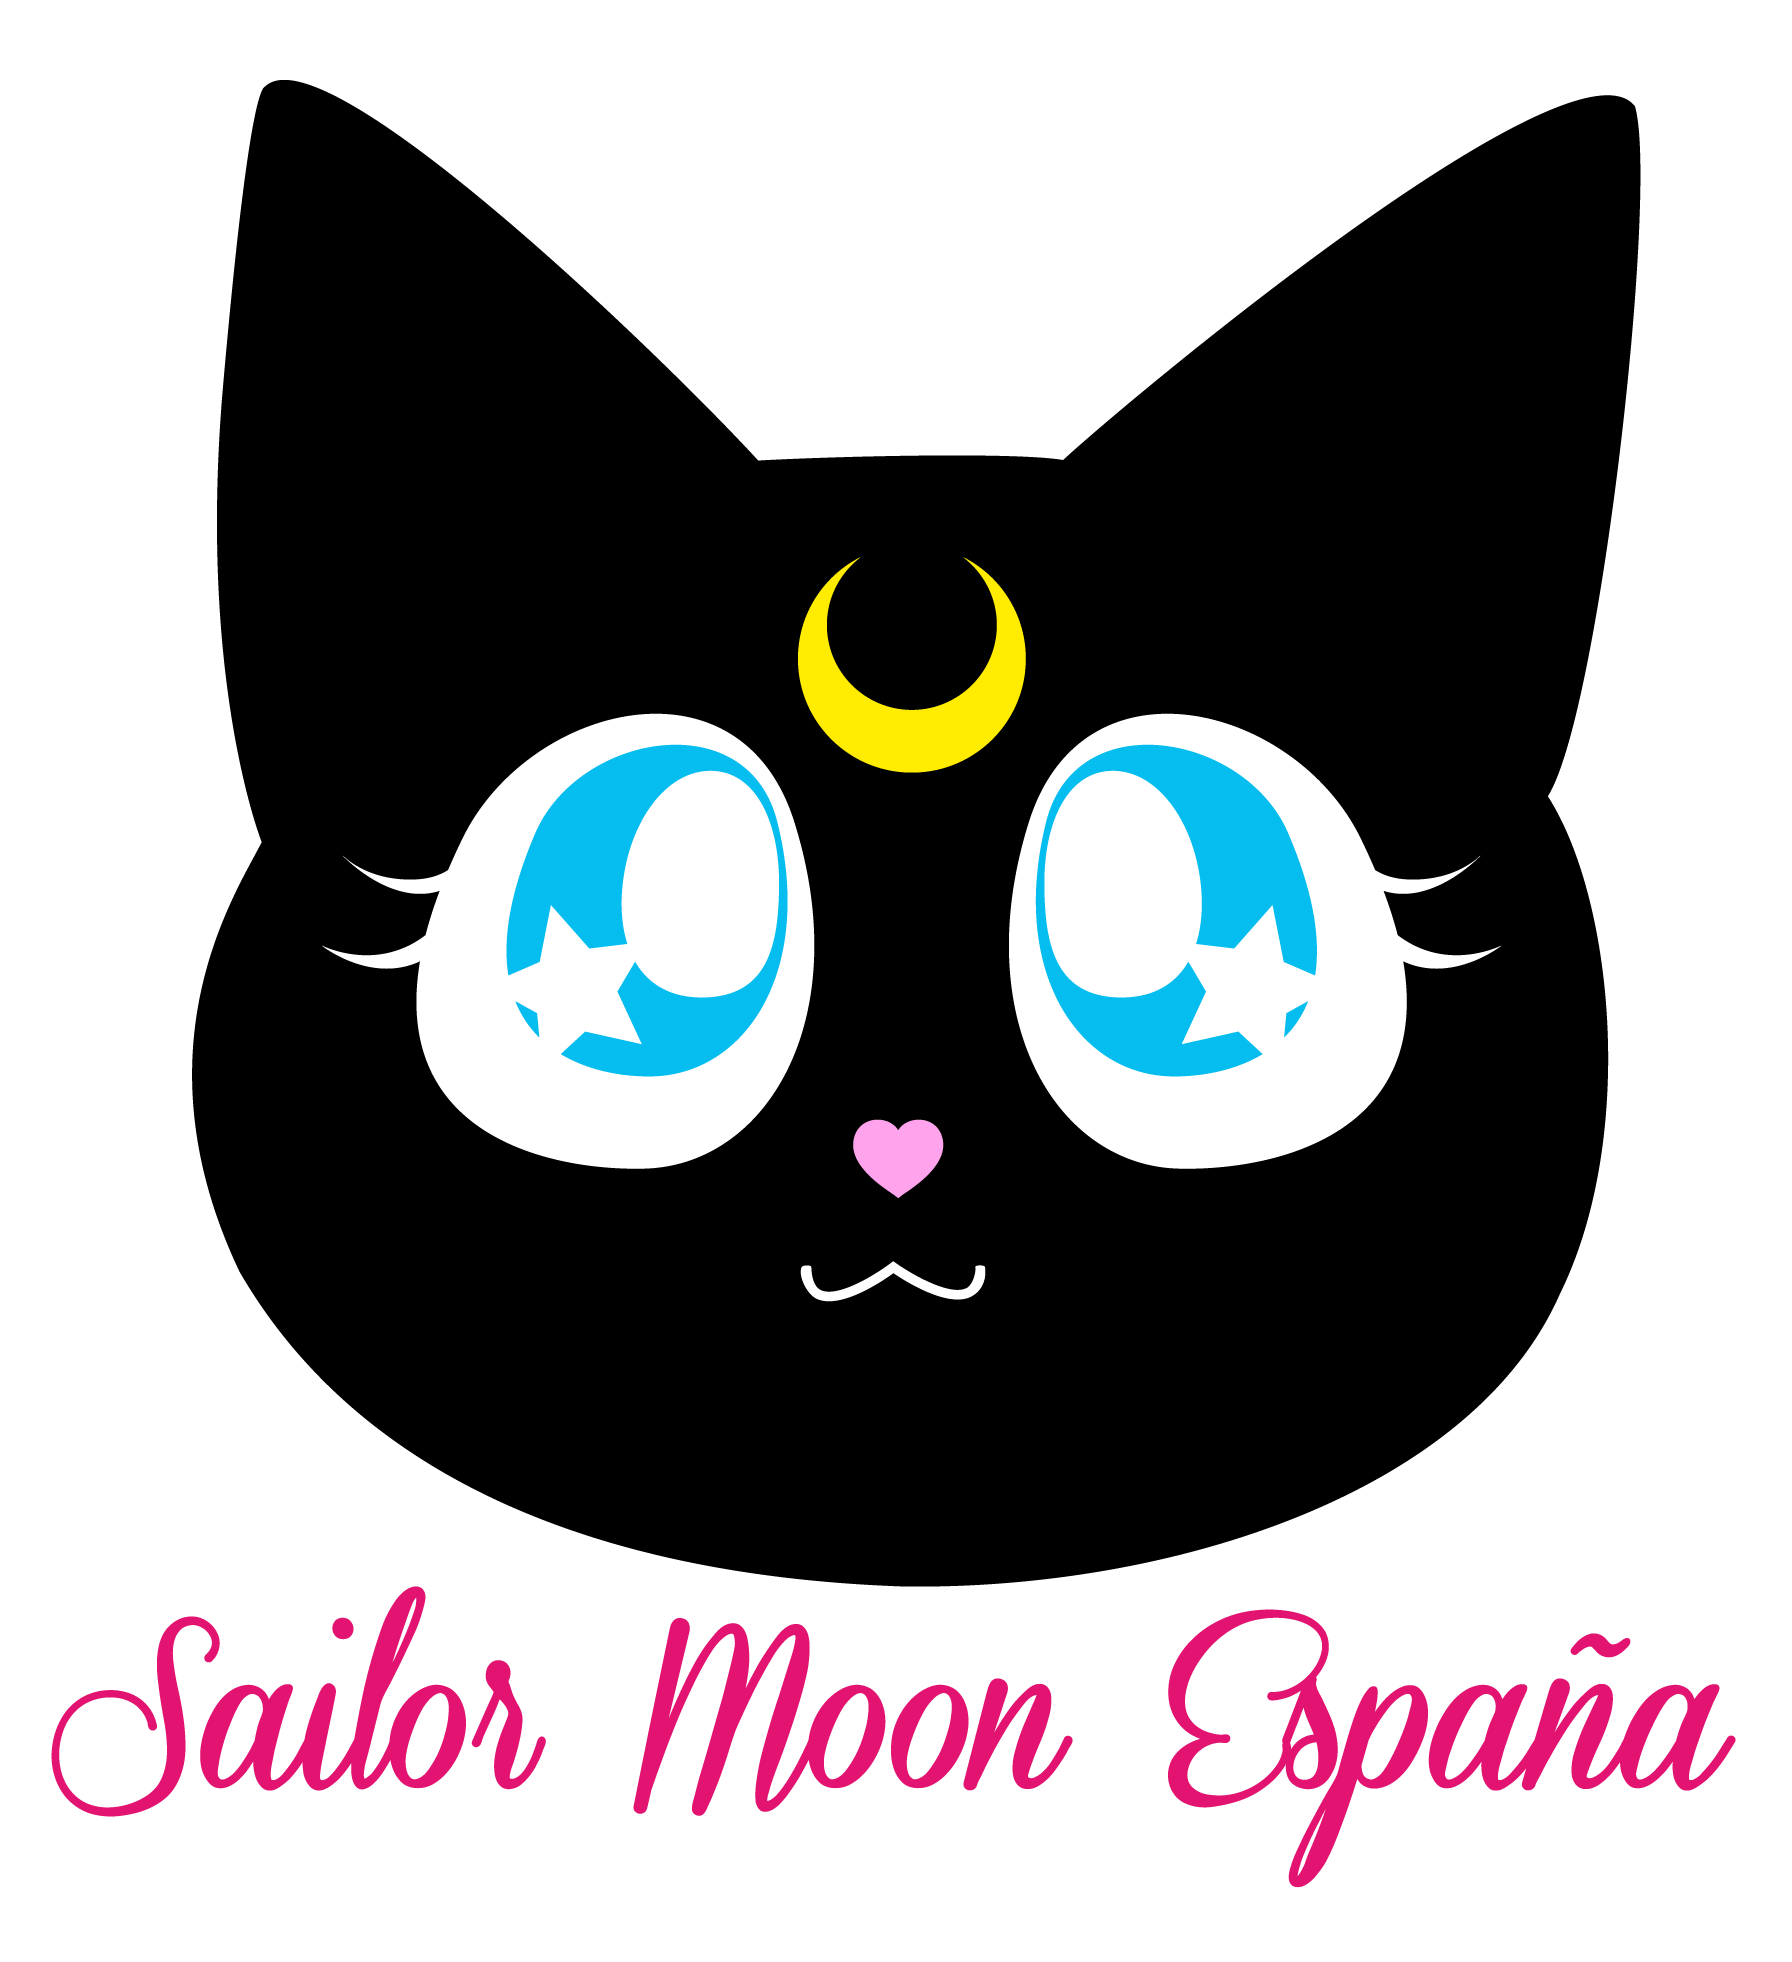 sailor moon españa